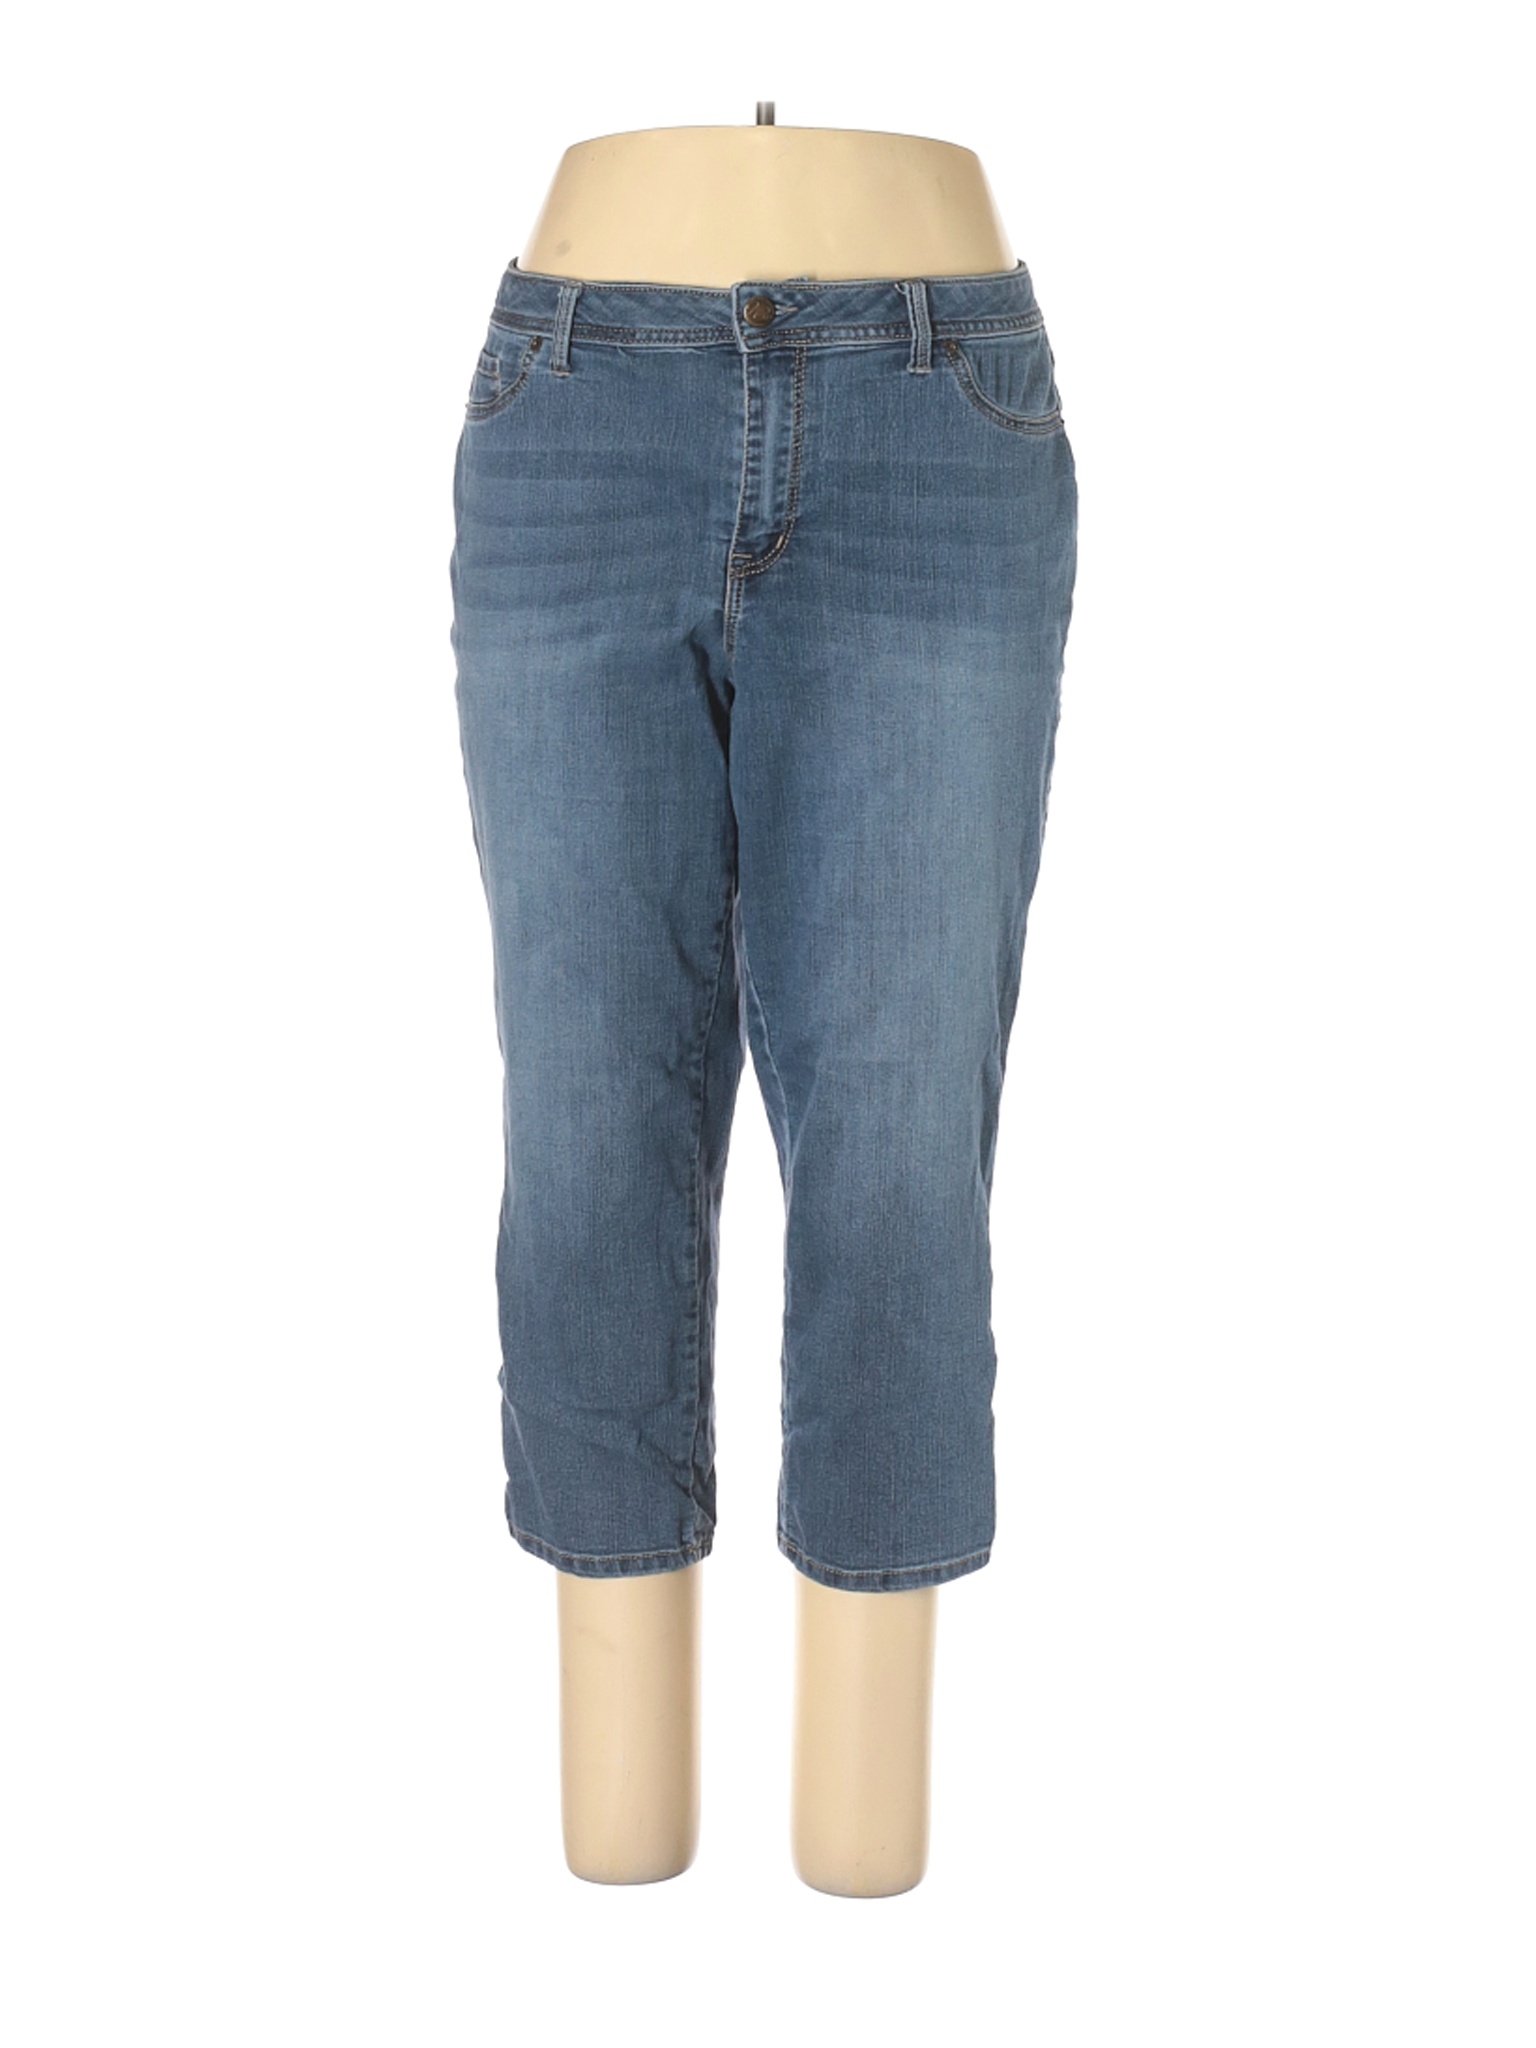 Westport 1962 Women Blue Jeans 18 Plus | eBay